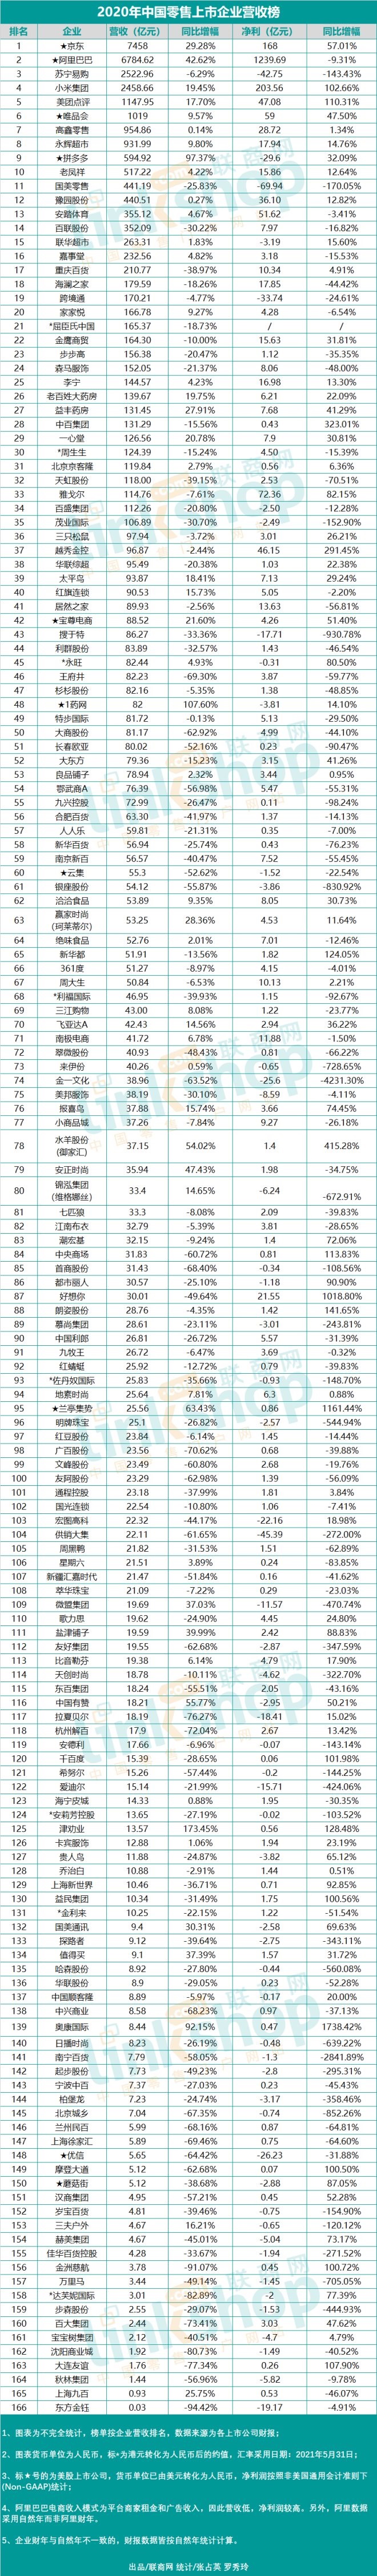 2020年中国零售上市企业营收排行榜